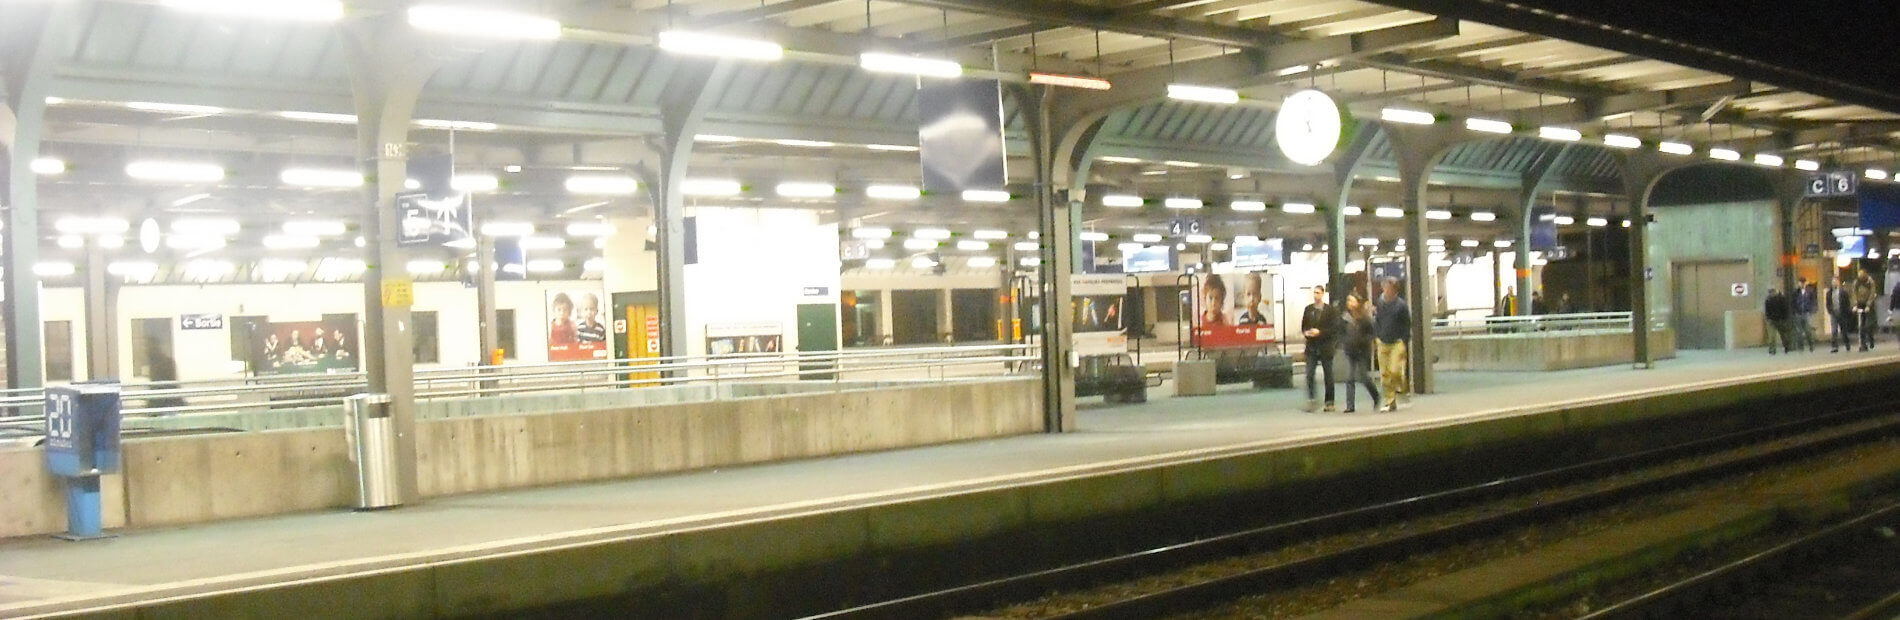 Gare Cornavin Genève